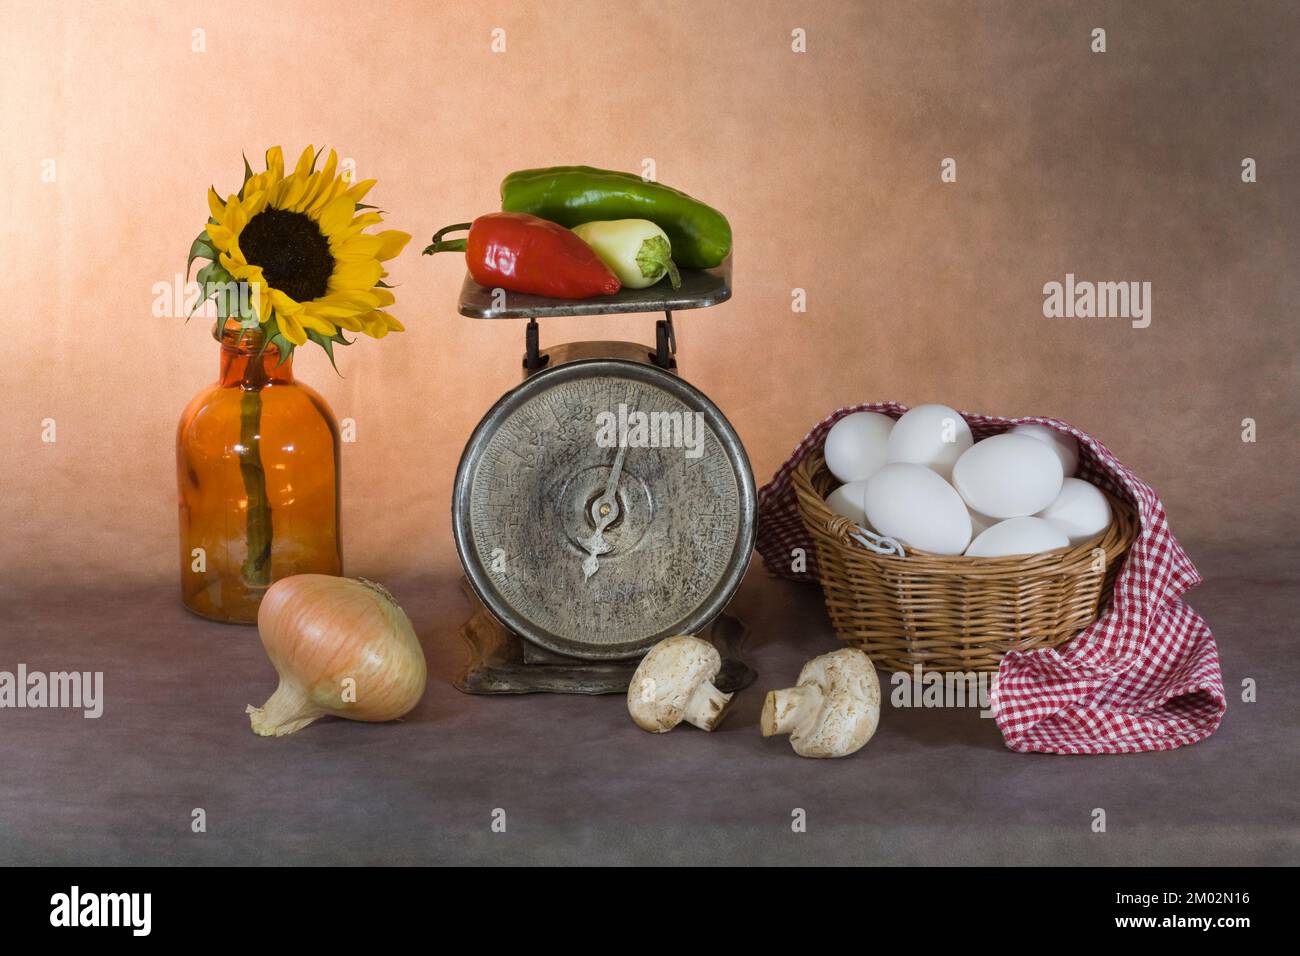 Ein Kunstfoto von einem Dutzend Eiern in einem Korb, Gemüse in einer alten Größe und eine Sonnenblume in einer alten Flasche. Stockfoto